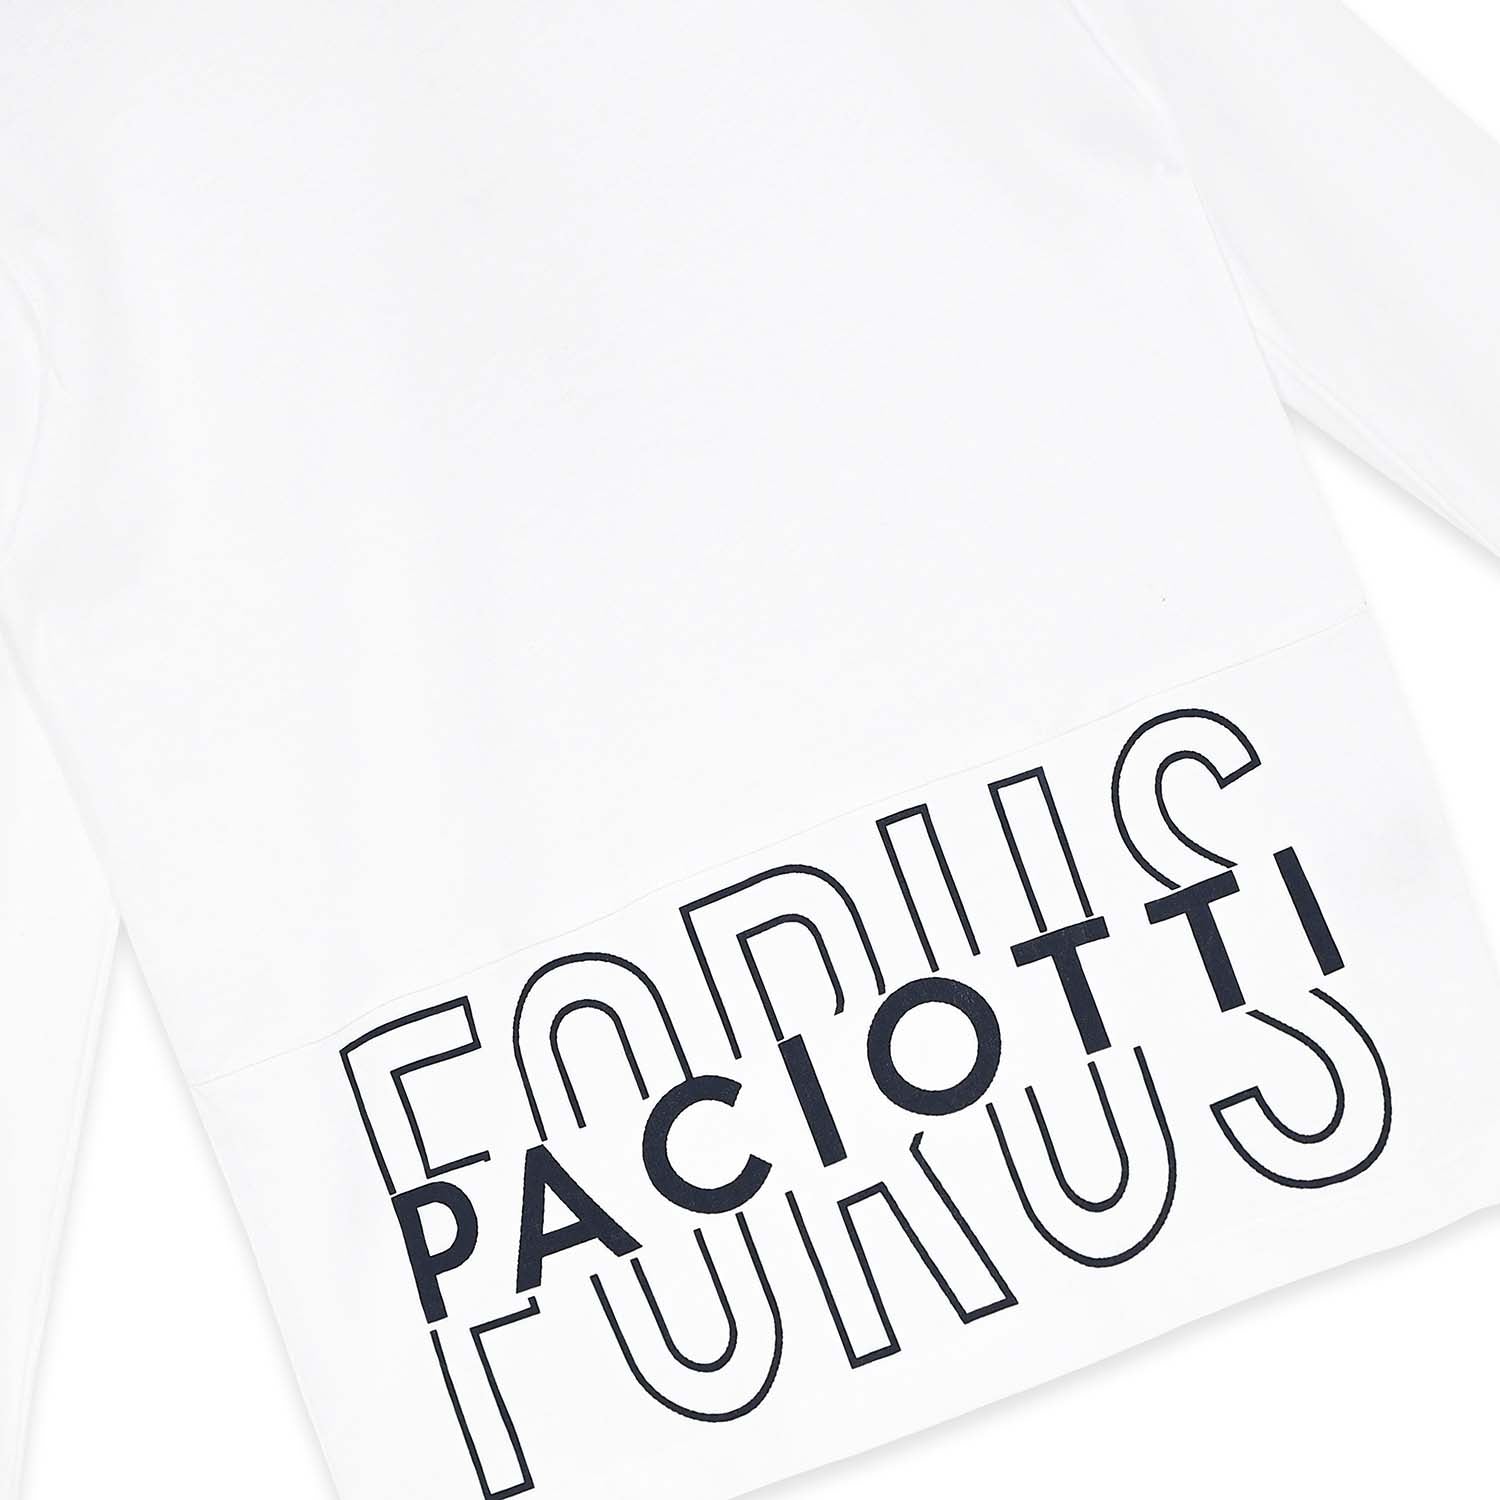 T-shirt da ragazzo 4US Paciotti in jersey 100% cotone